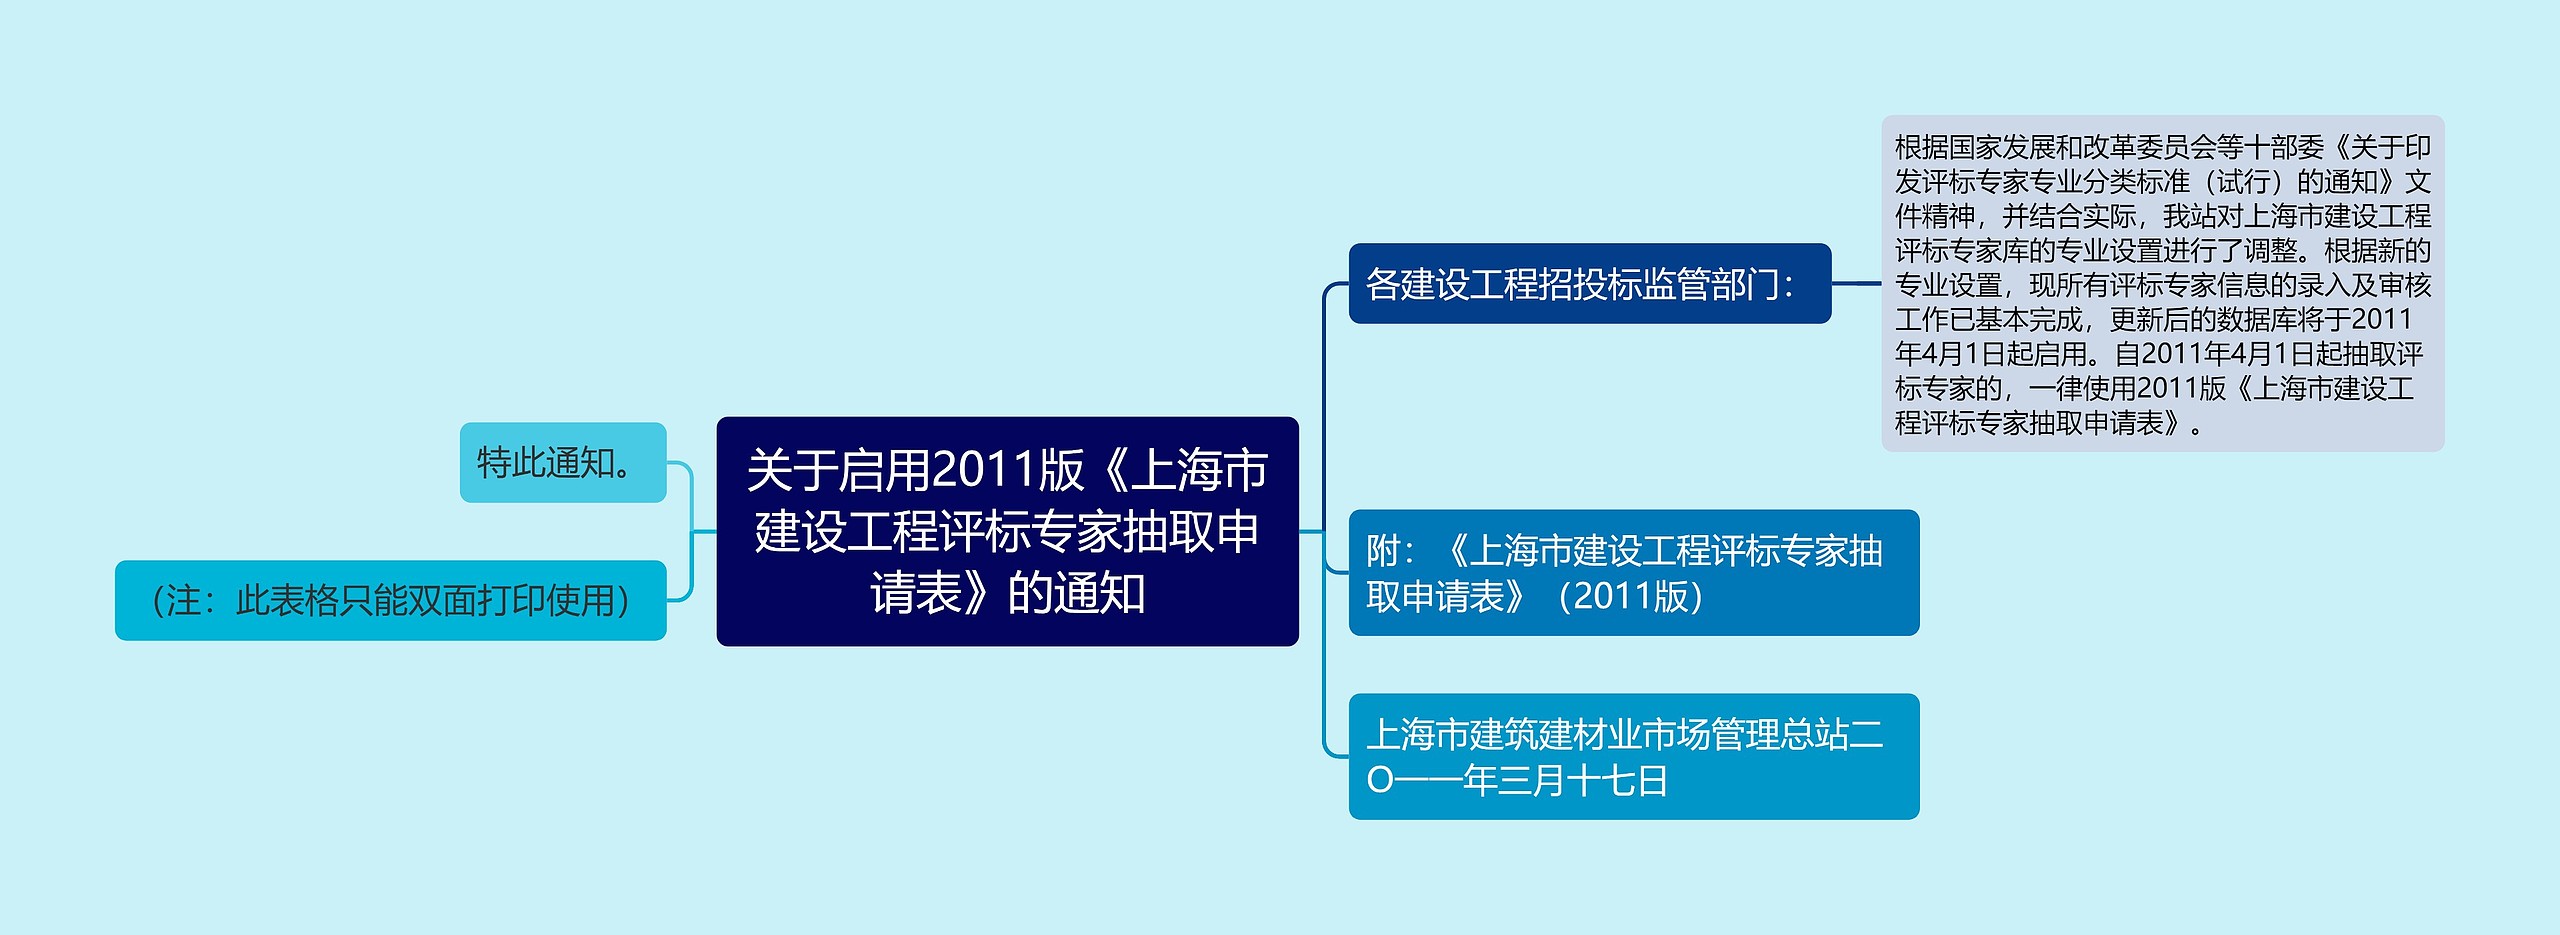 关于启用2011版《上海市建设工程评标专家抽取申请表》的通知思维导图